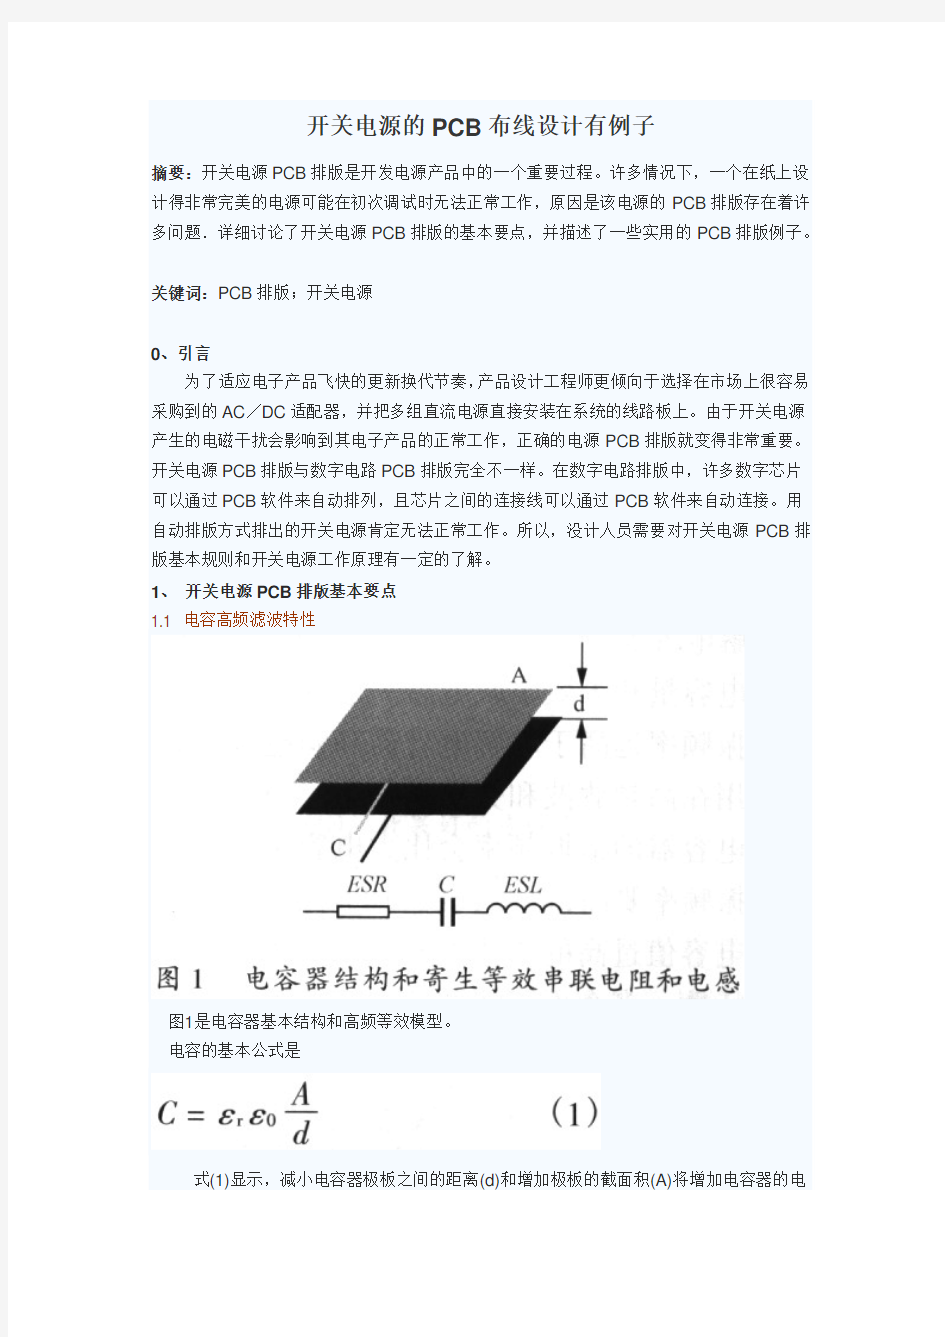 开关电源的PCB布线设计有例子 19页 1.5M